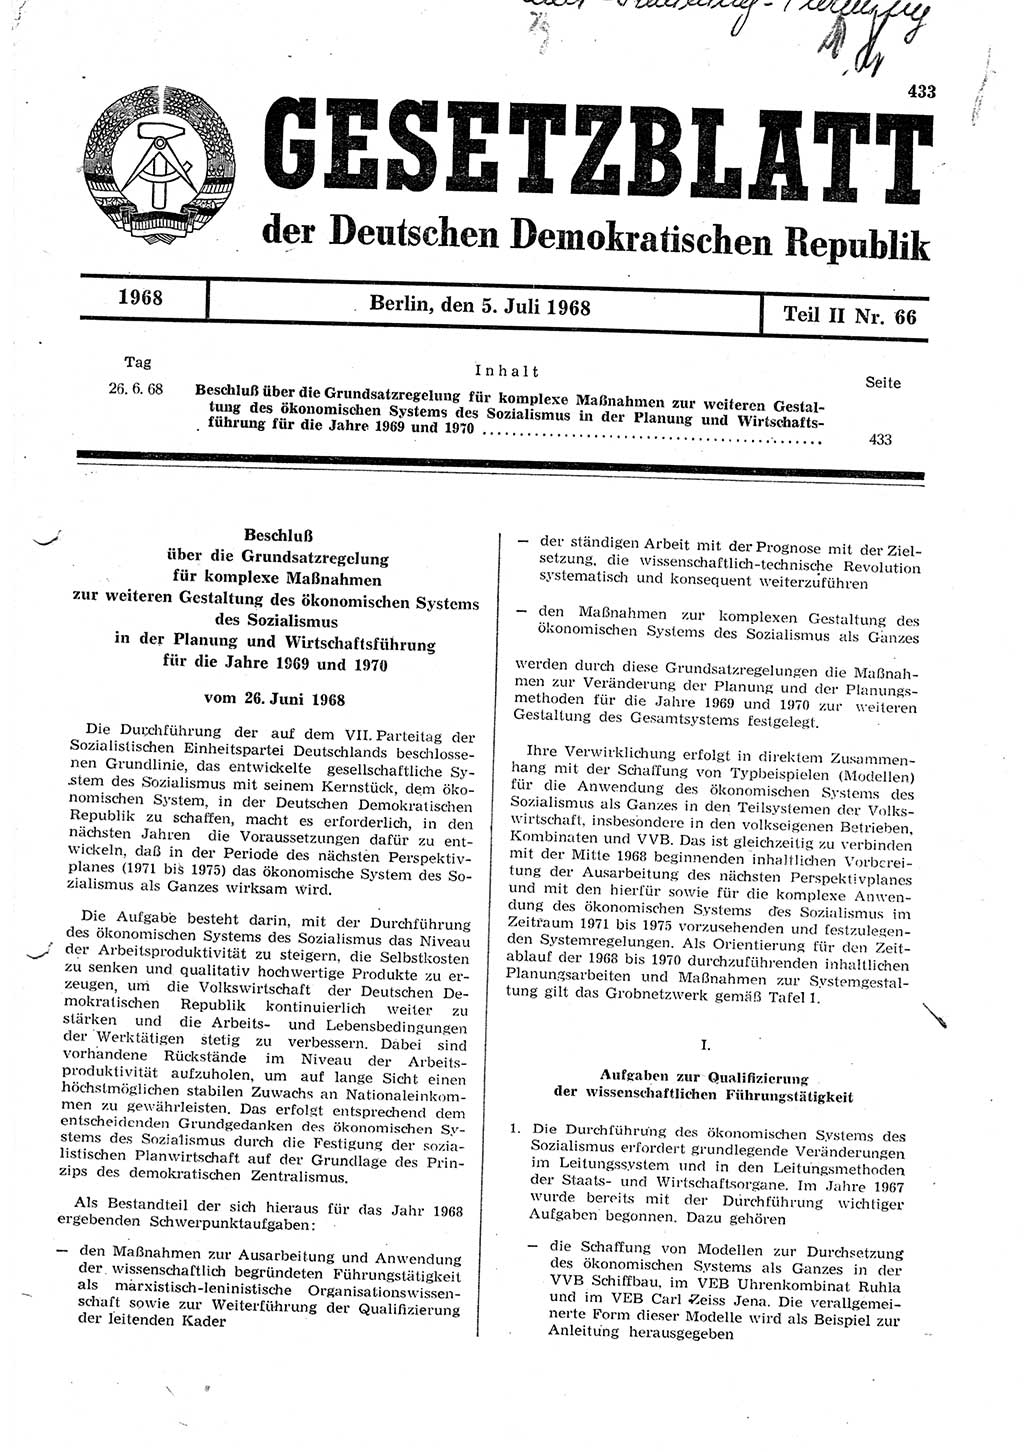 Gesetzblatt (GBl.) der Deutschen Demokratischen Republik (DDR) Teil ⅠⅠ 1968, Seite 433 (GBl. DDR ⅠⅠ 1968, S. 433)